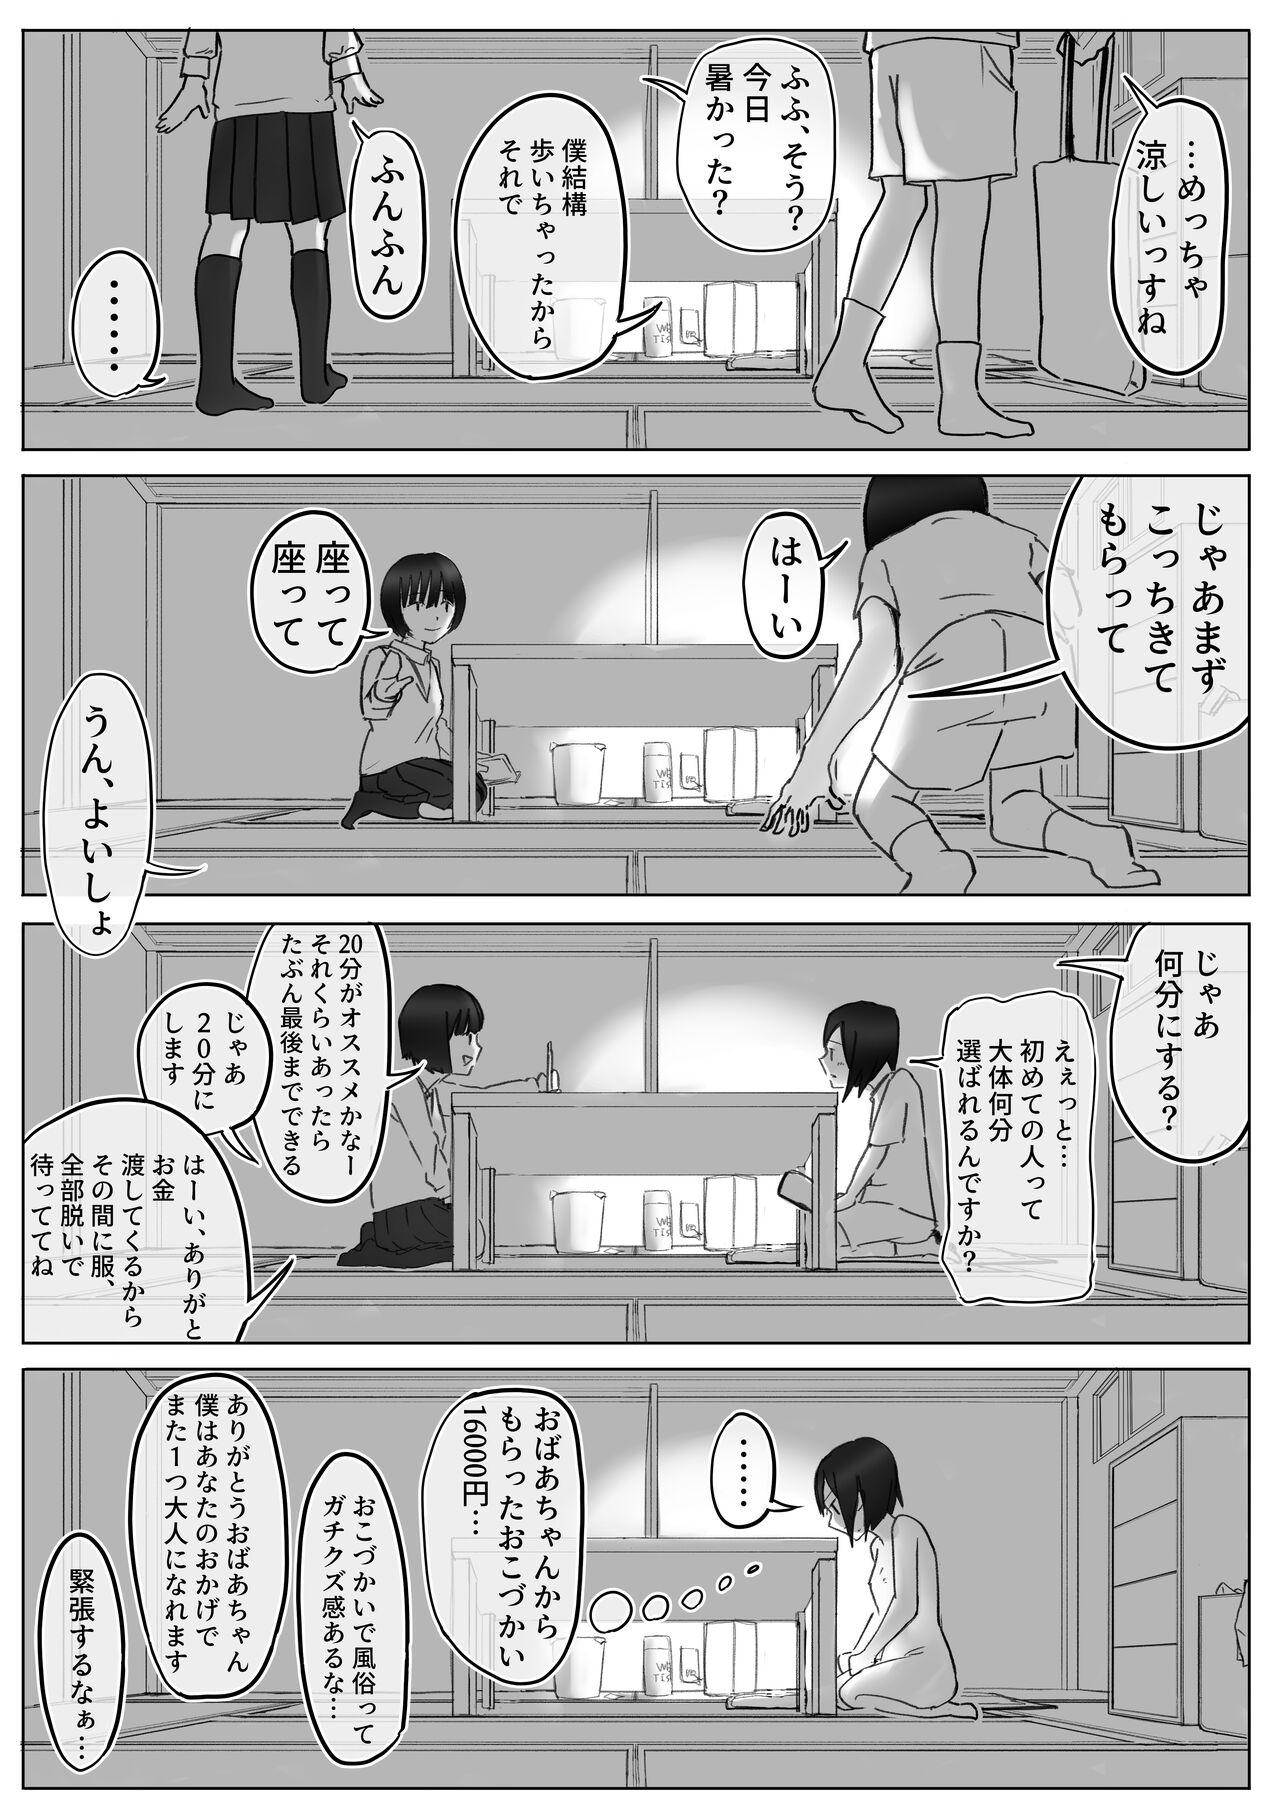 【風俗レポ漫画】飛田新地で童貞を捨てた話 11